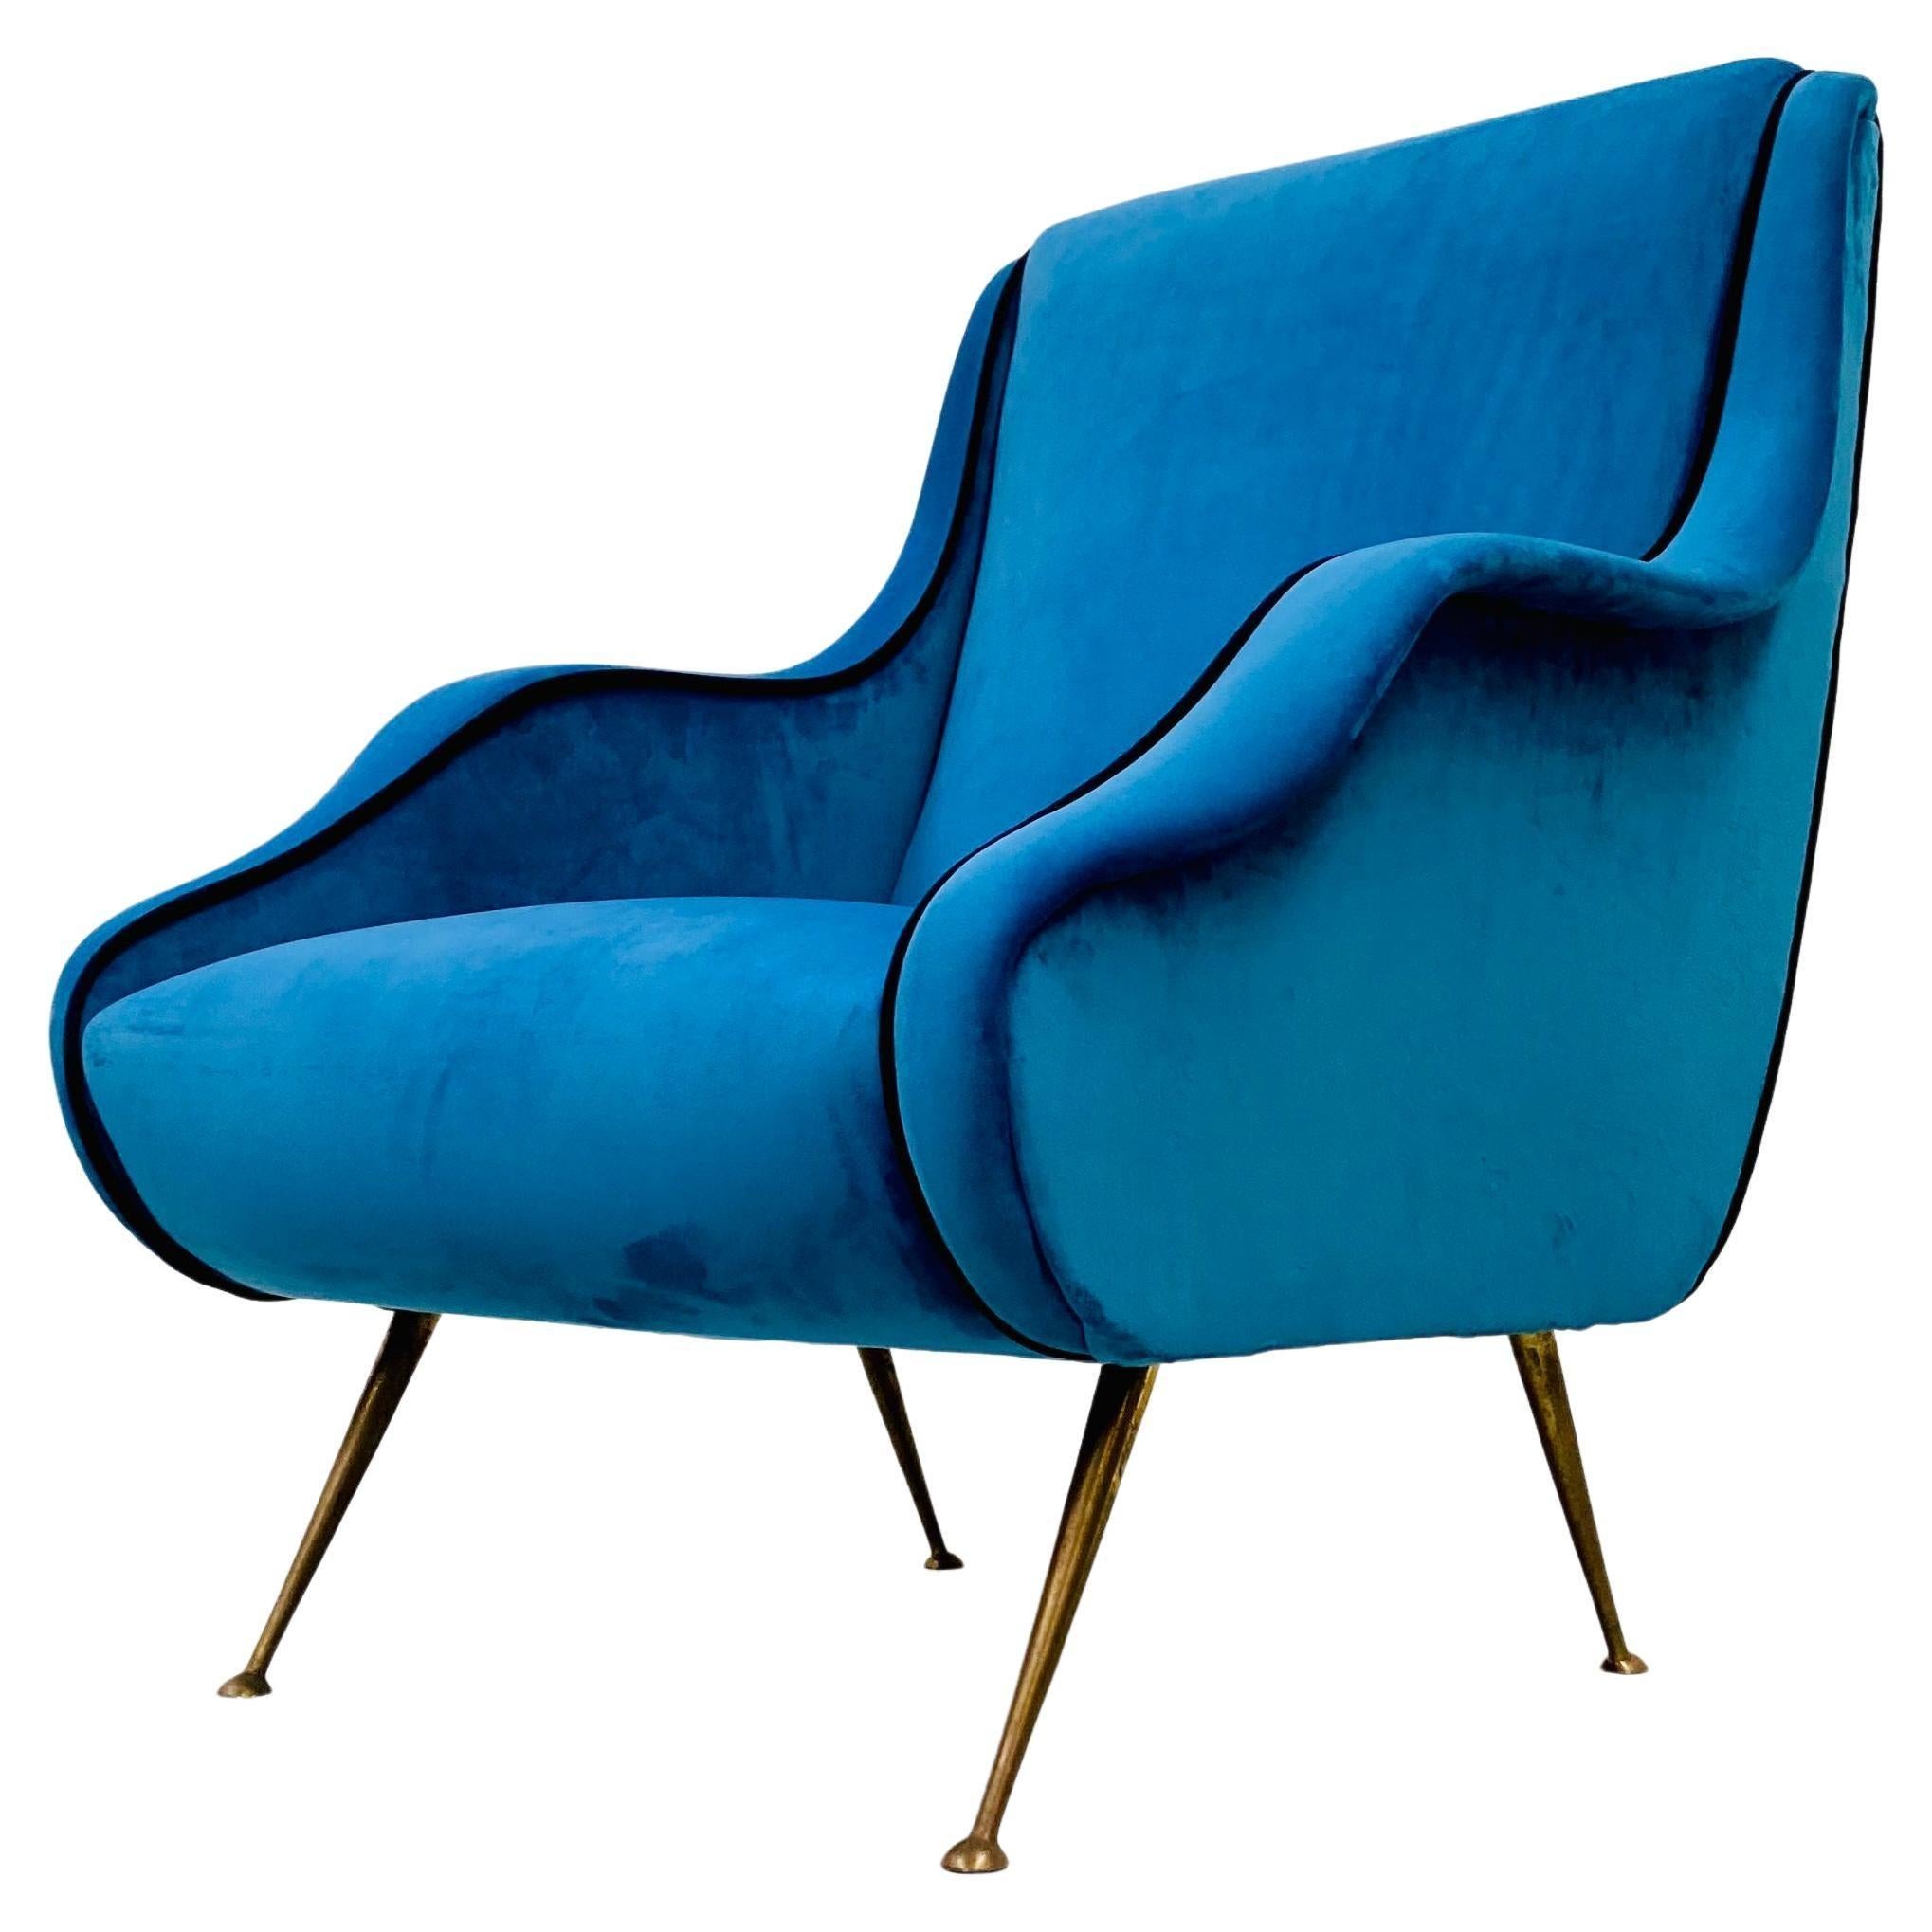 1950s style armchair